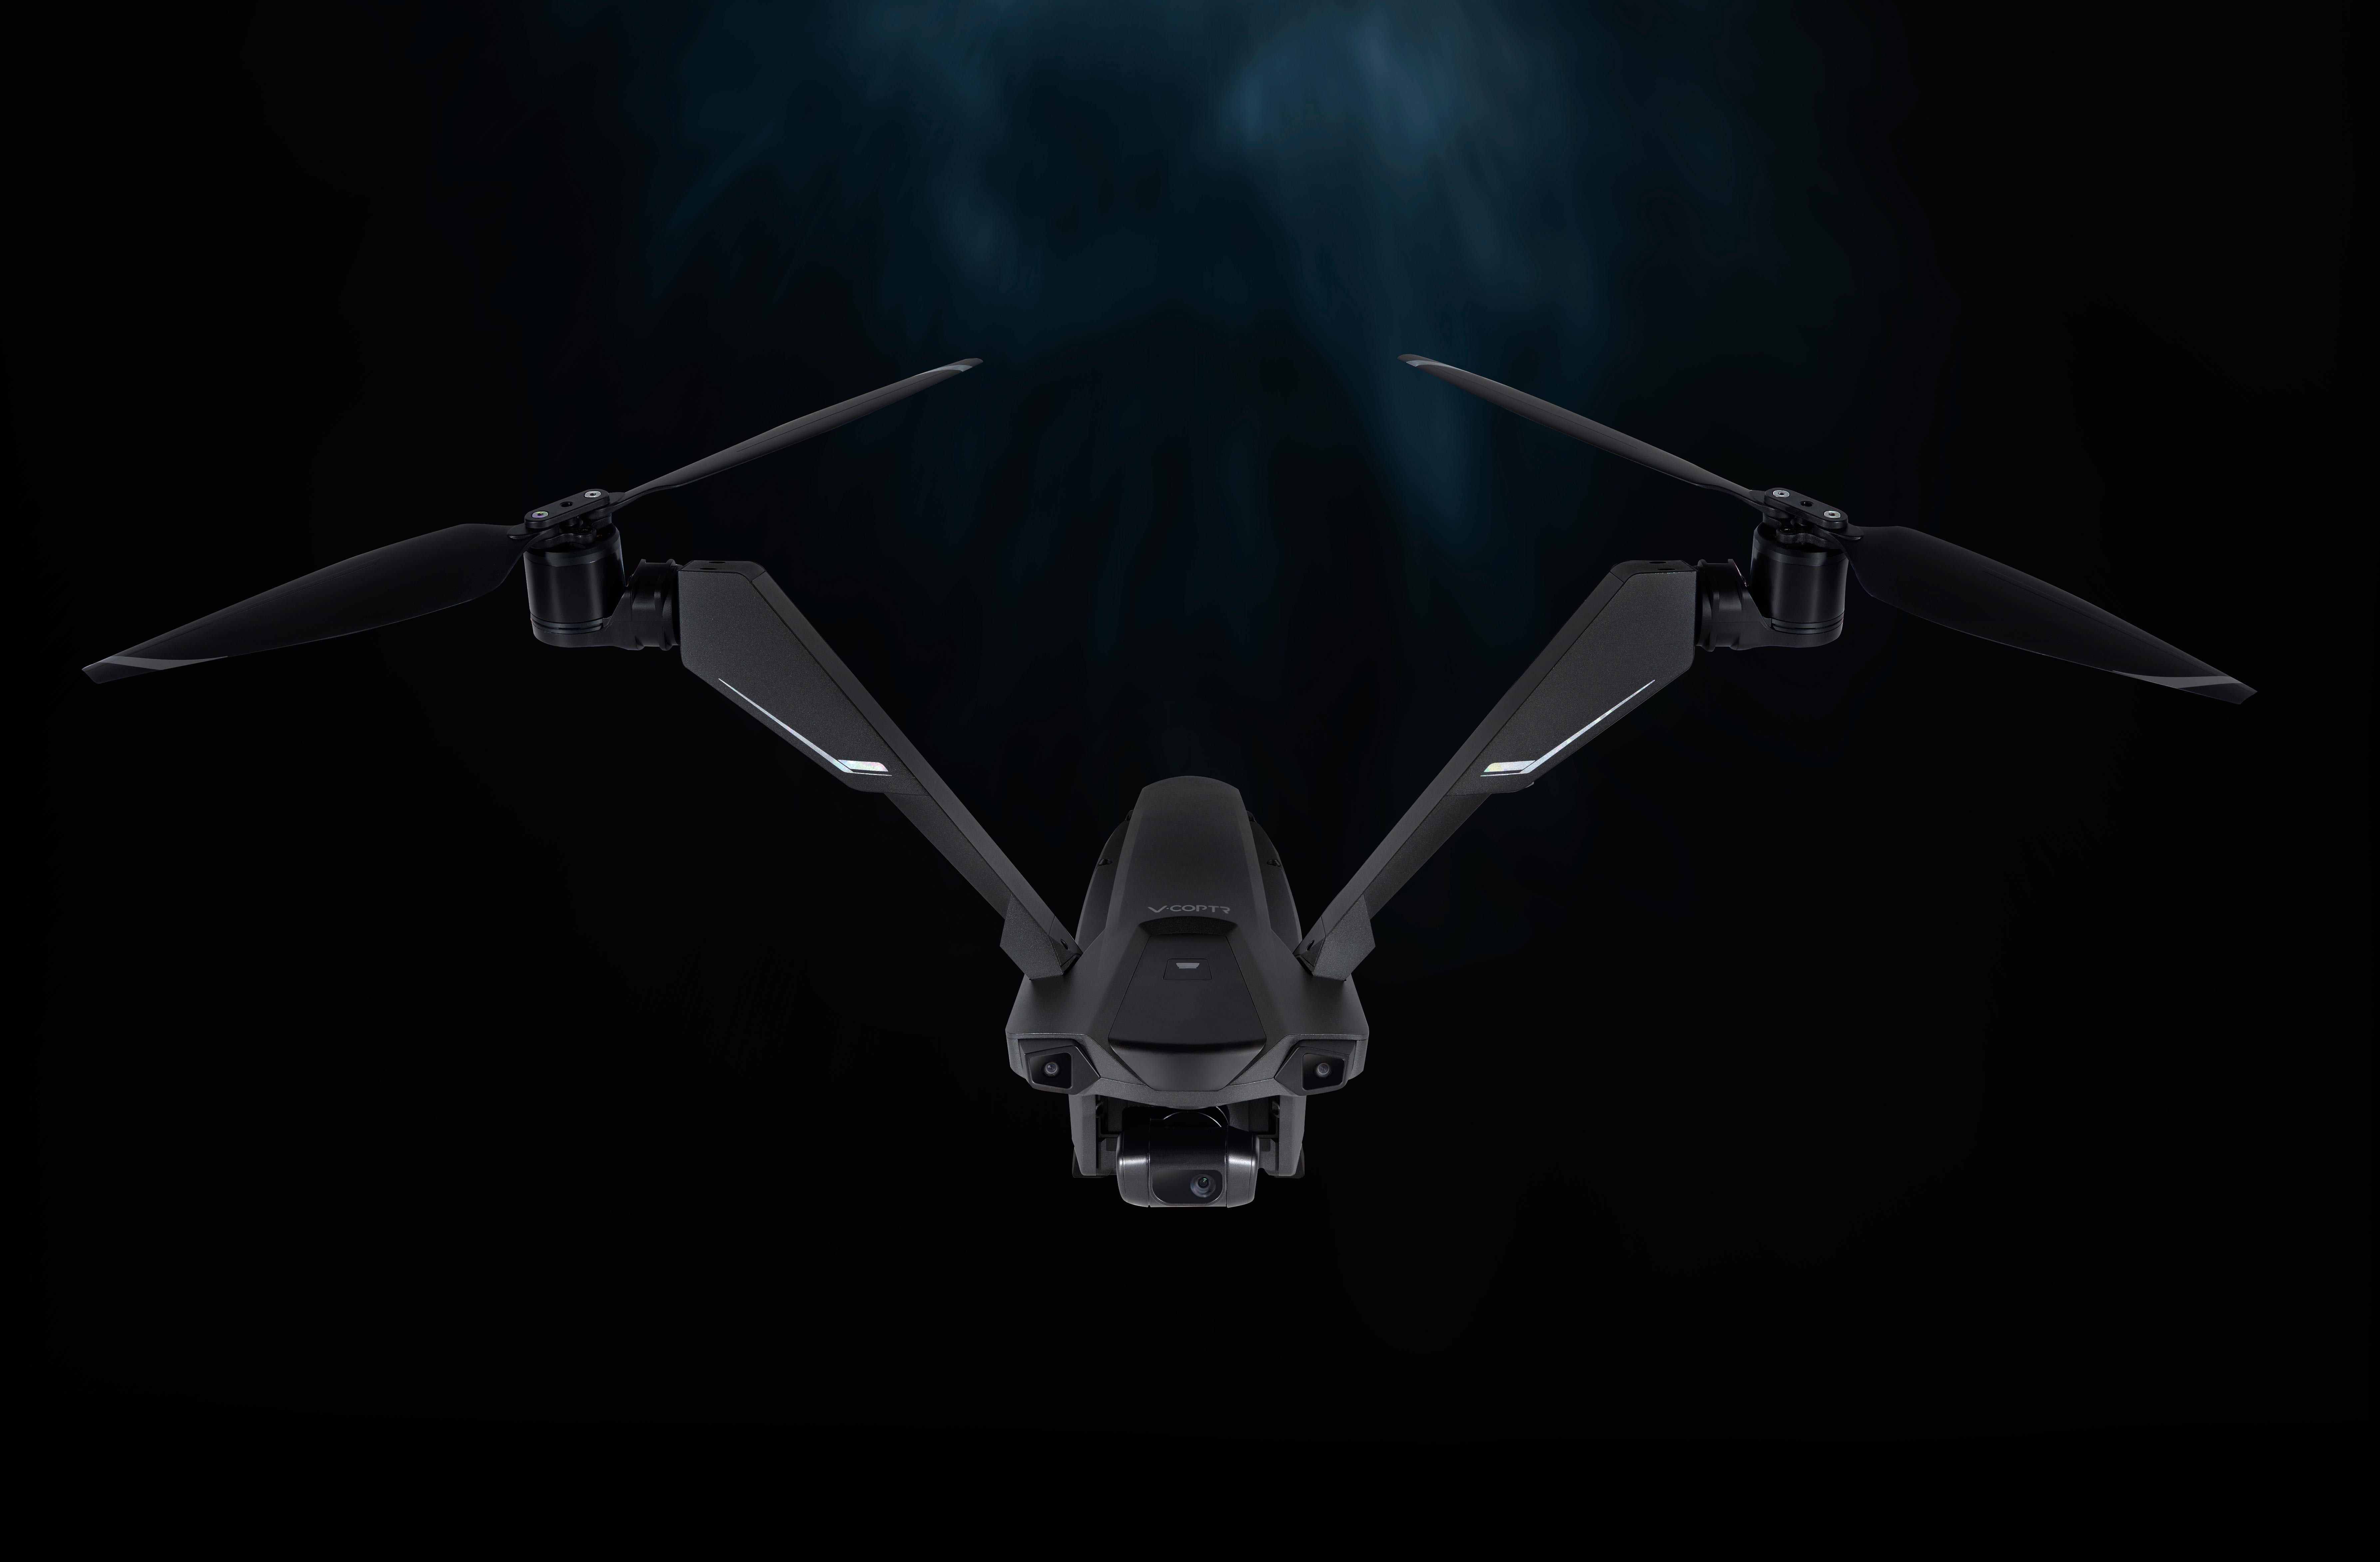 零零科技双旋翼无人机图片